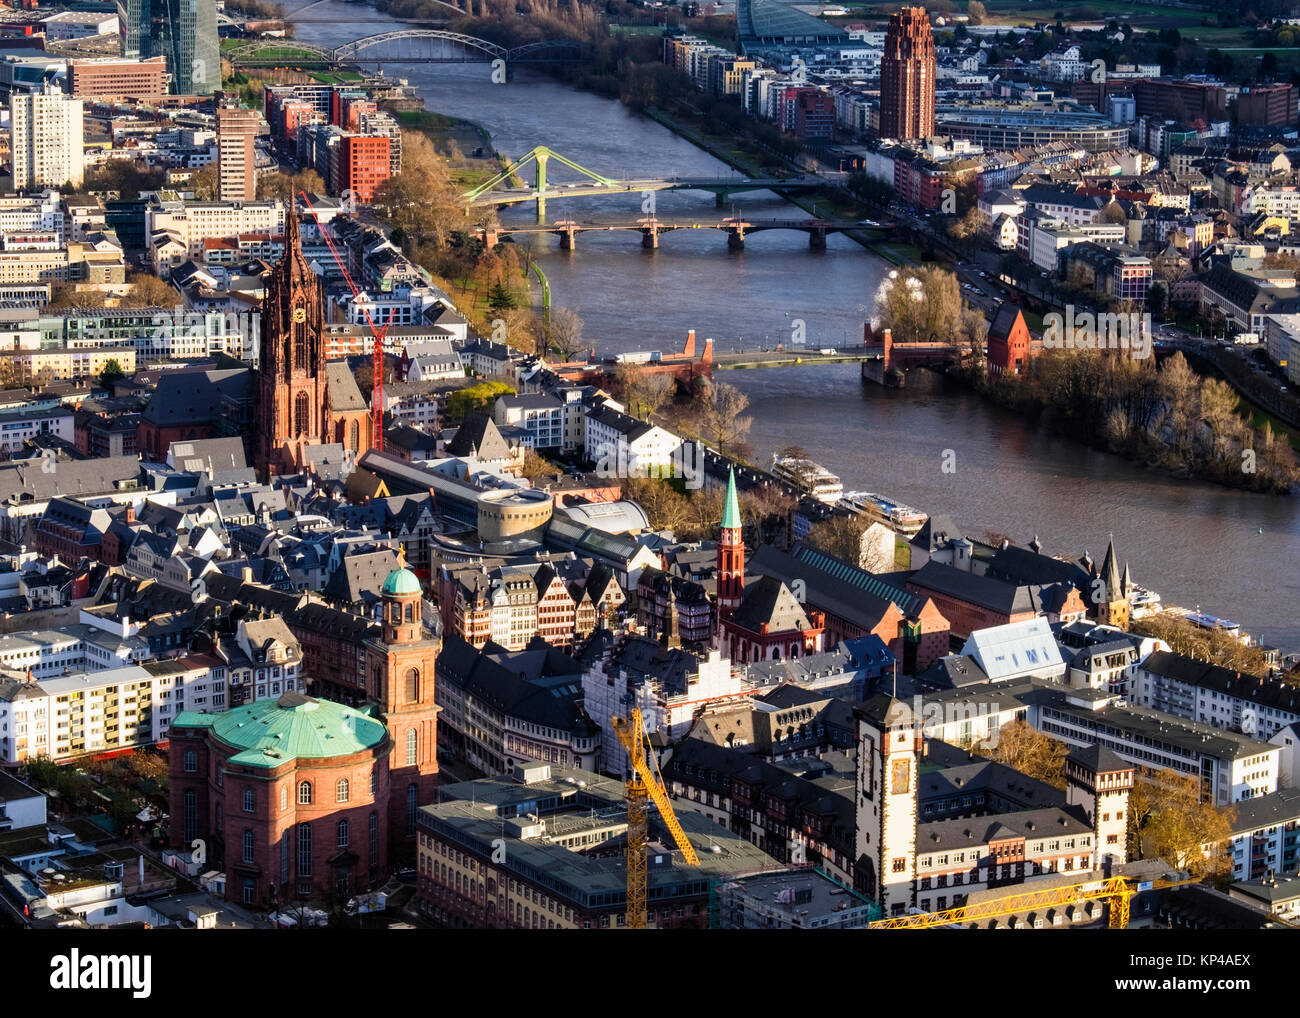 Frankfurt, Deutschland. Luftaufnahme vom Main Tower der Helaba. Historische Altstadt Kirchen, Gebäuden, Brücken über den Main Stockfoto